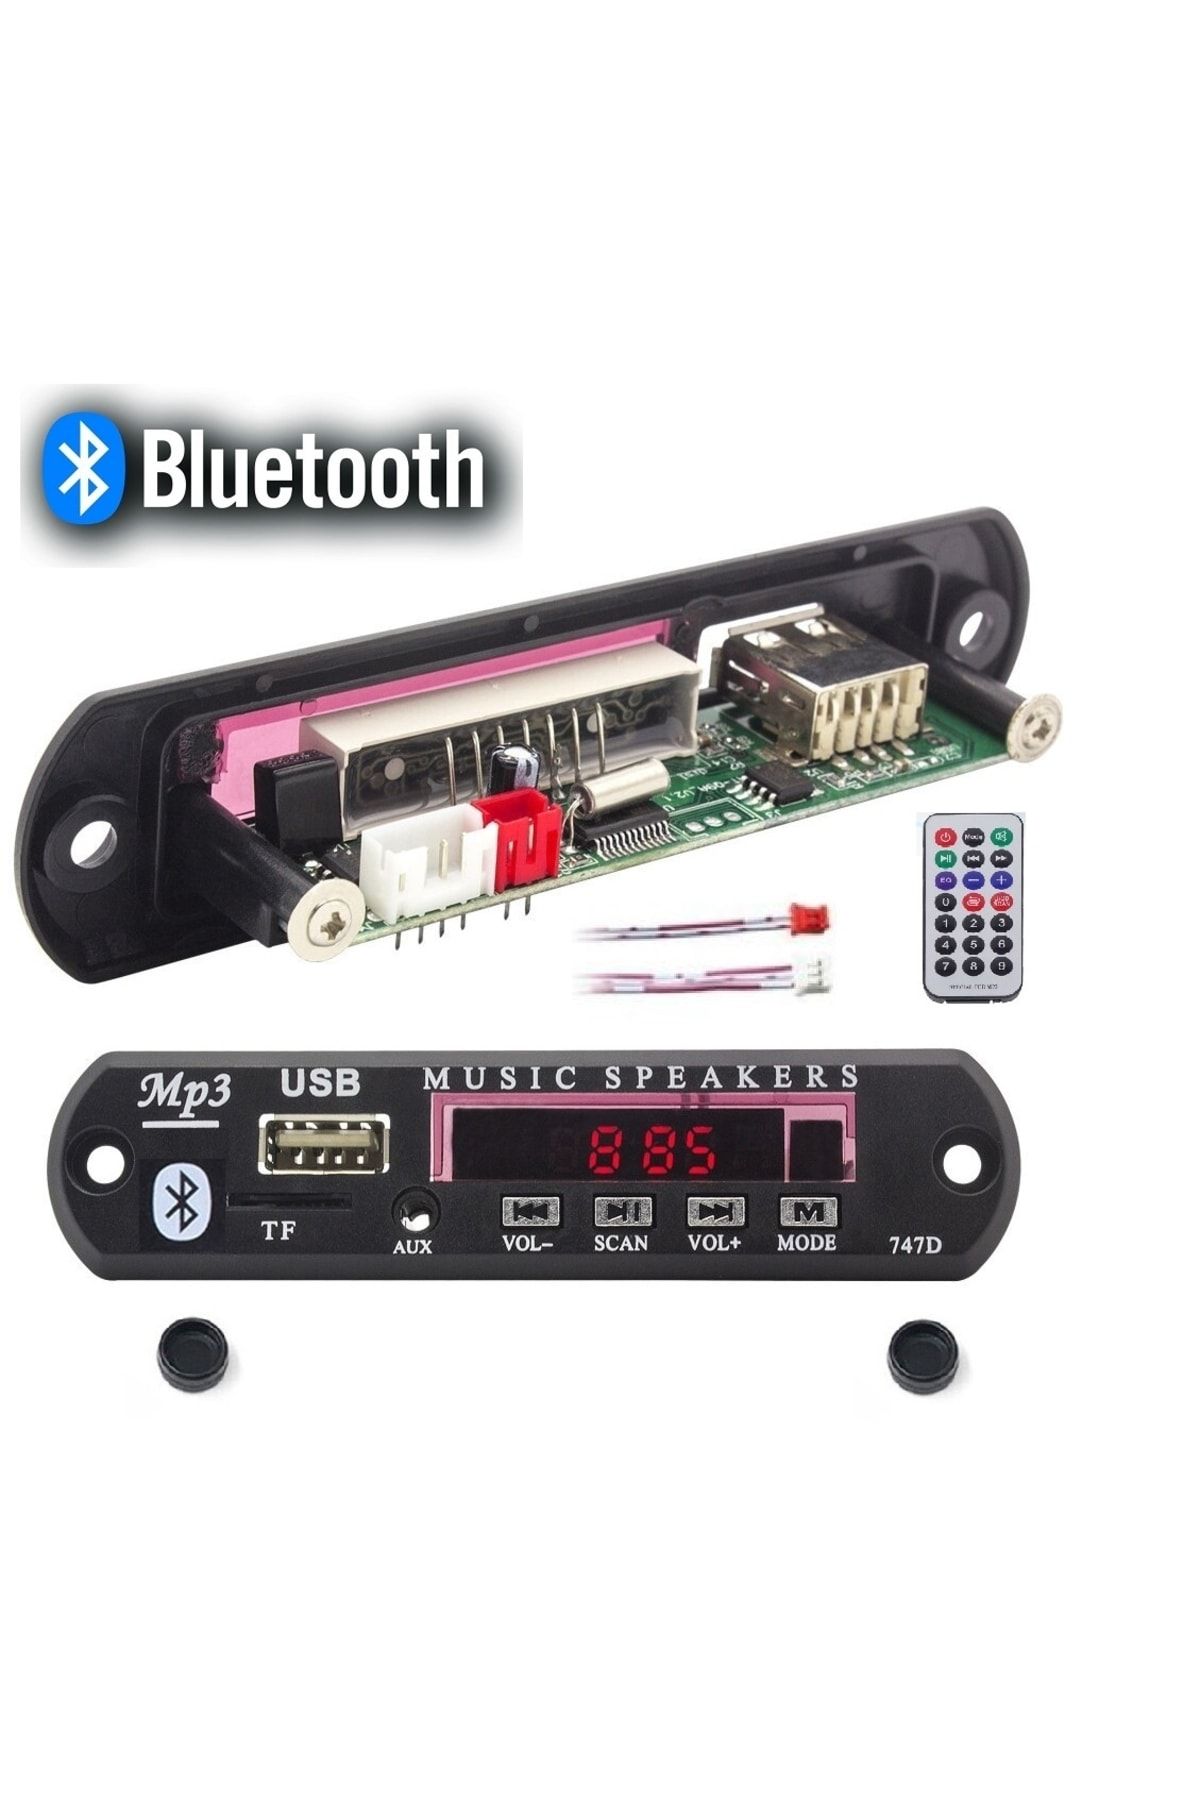 Derwell Class Bluetoothlu Araç Oto Teyp Aux Usb Sd Mikrofonlu Dönüştürücü Çevirici Mp3 Modülü Board Karttır